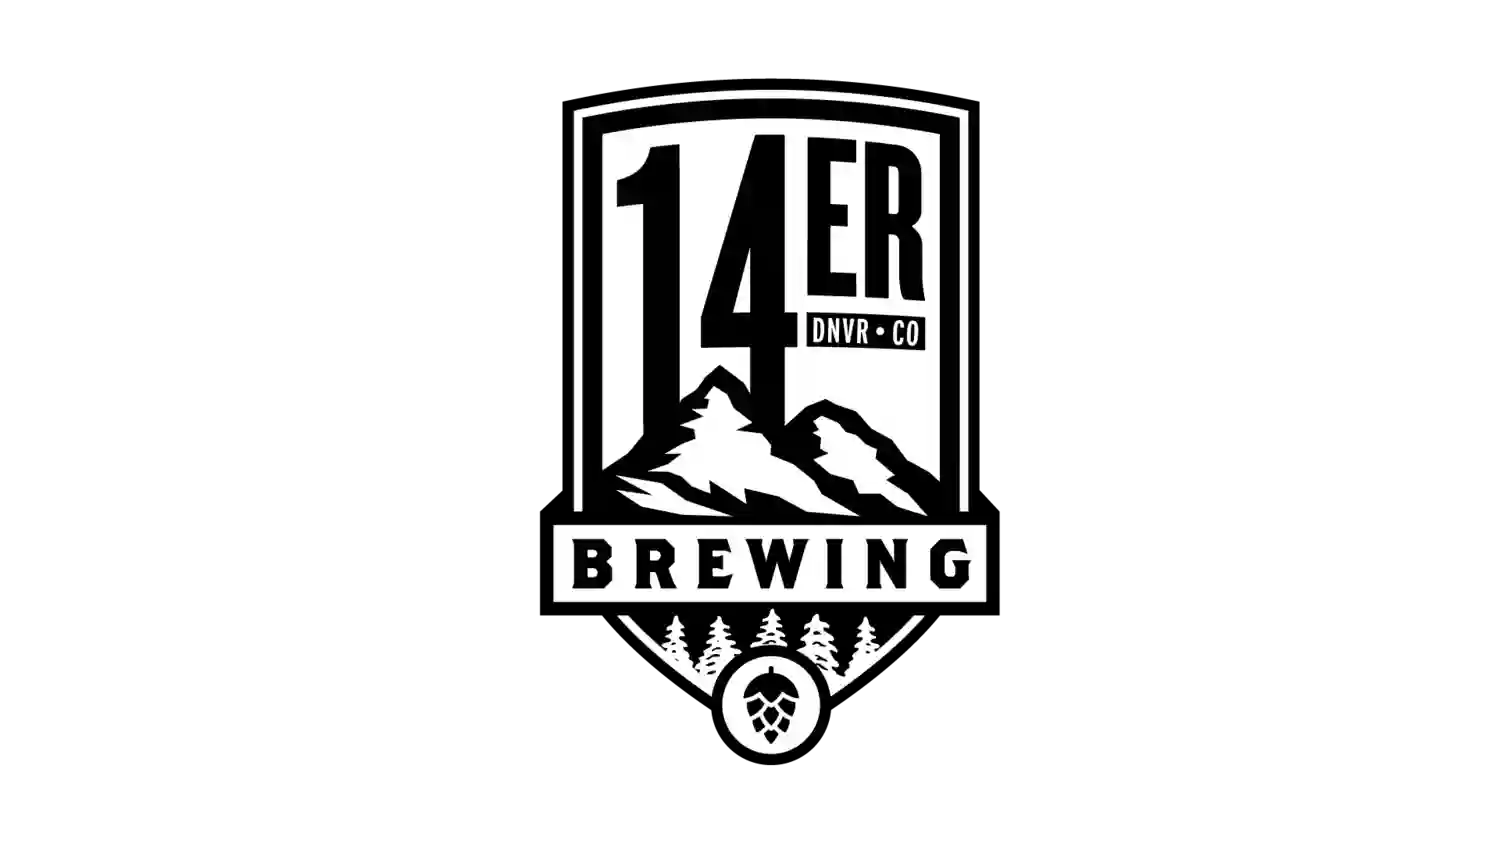 14er Brewing & Beer Garden